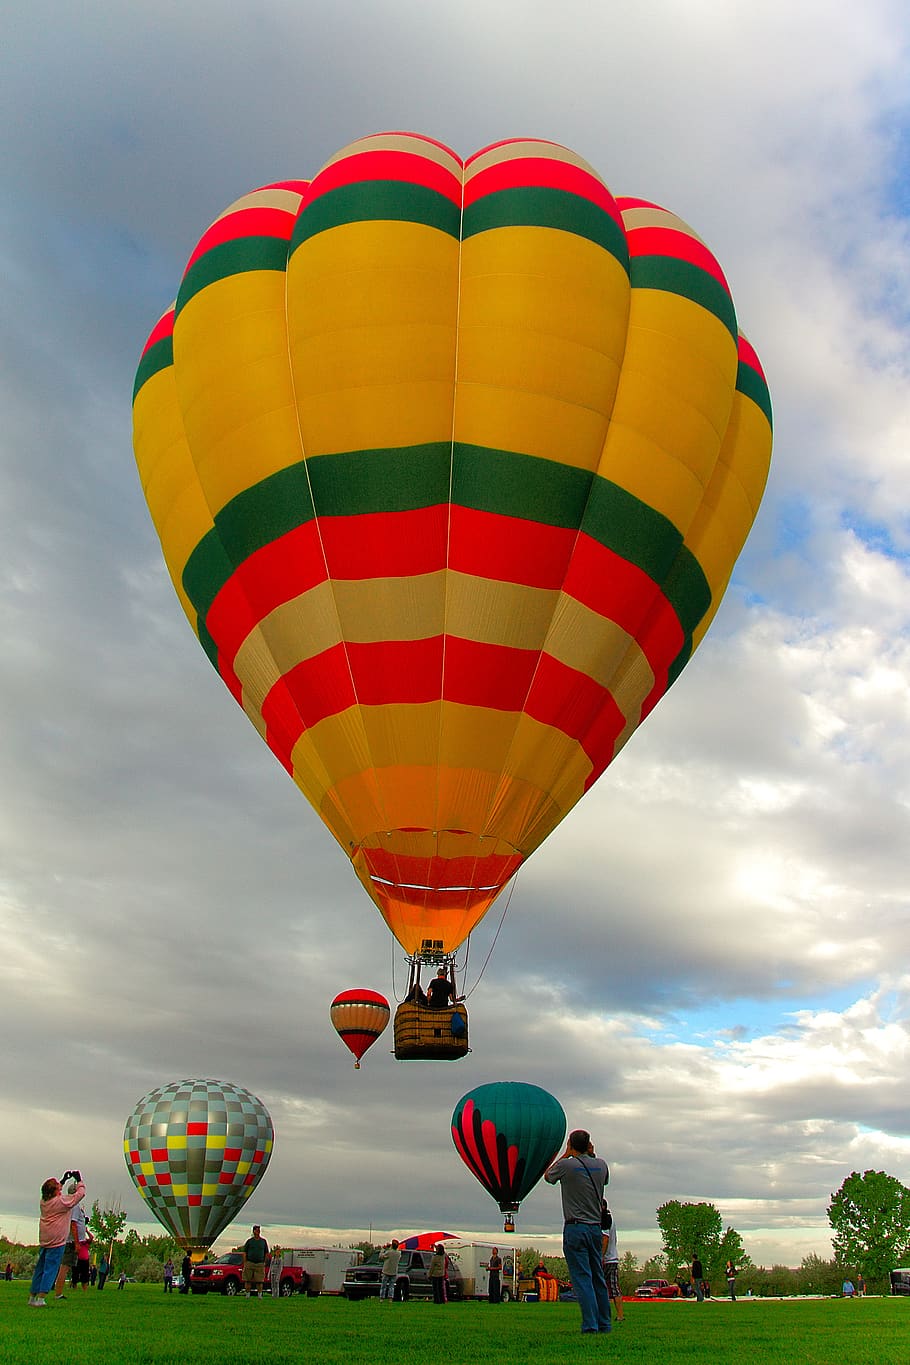 globo, vuelo, reunión de globo, globo aerostático, aventura, fotografía, cielo, nube - cielo, vehículo aéreo, multicolor